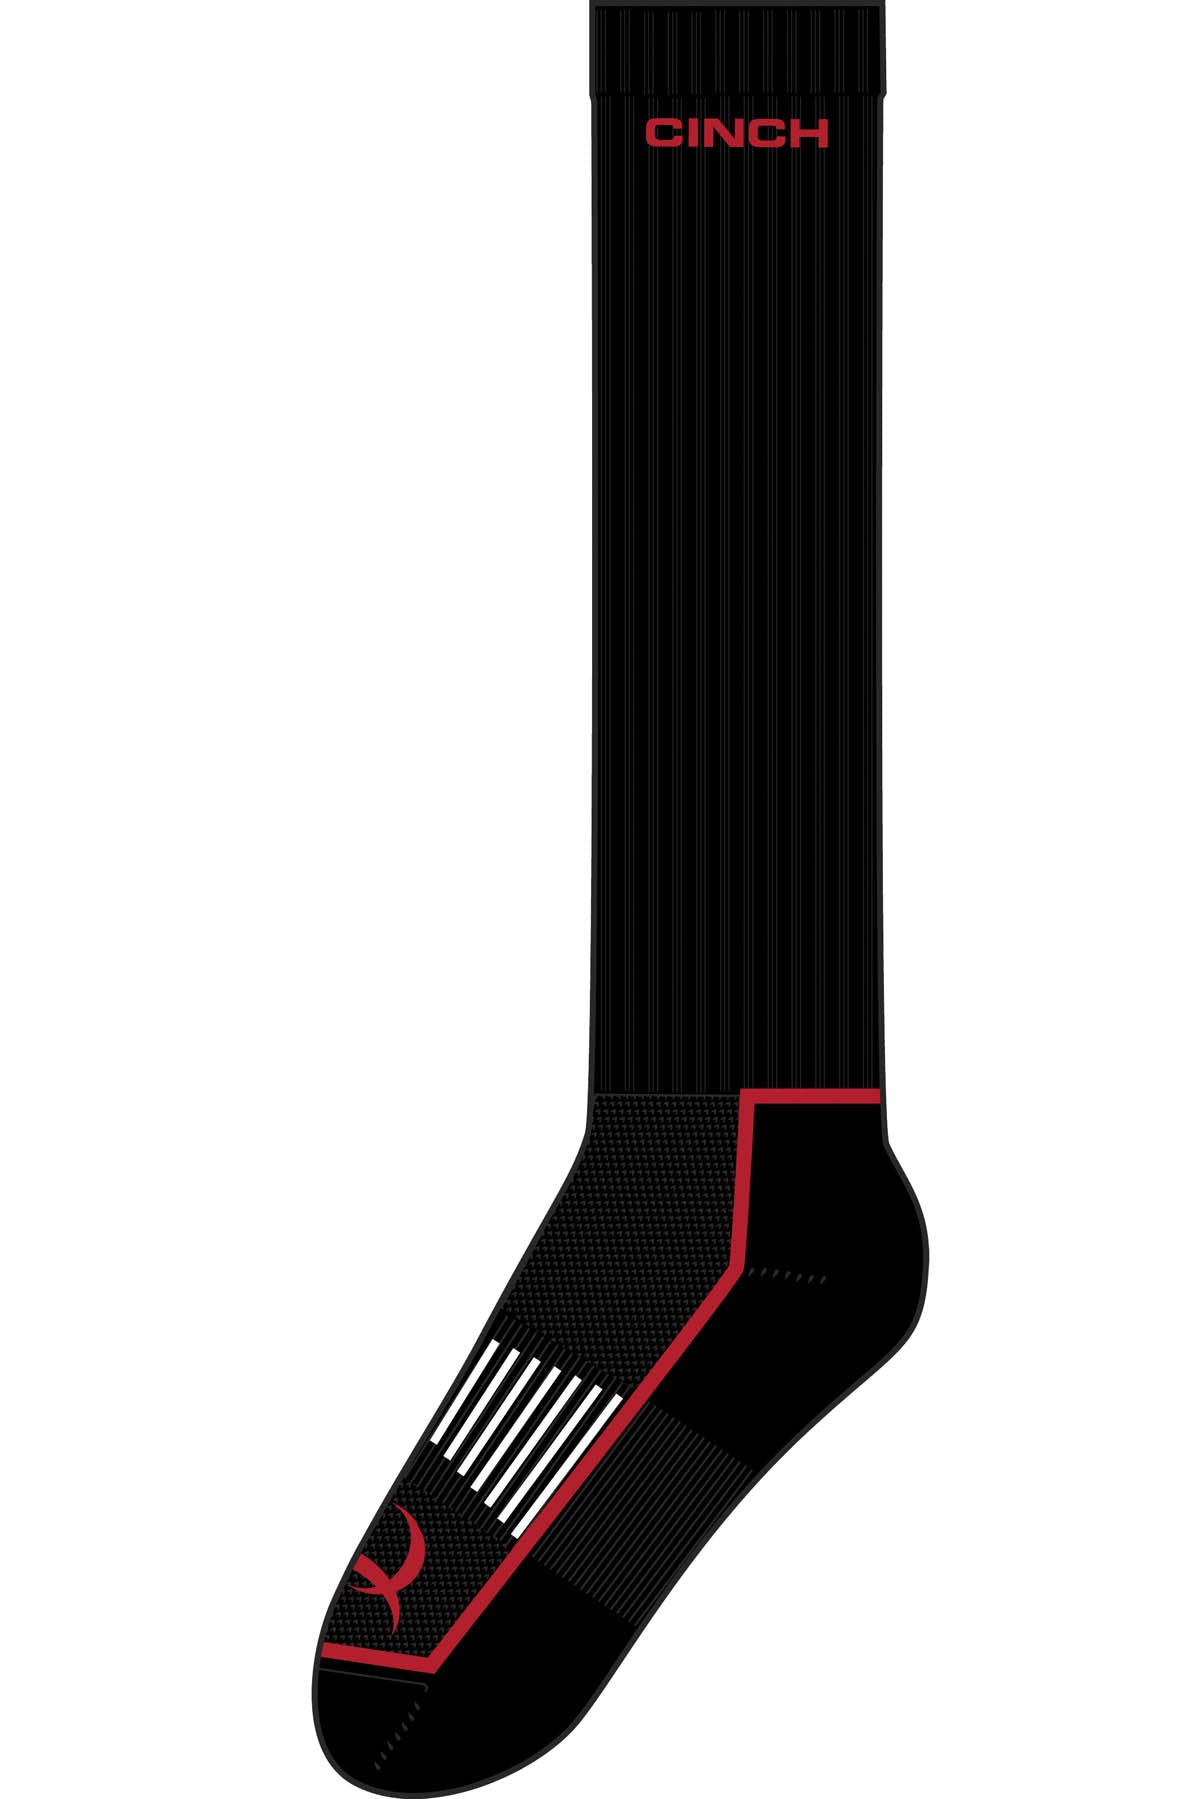 Cinch Men's Black/Red Boot Sock